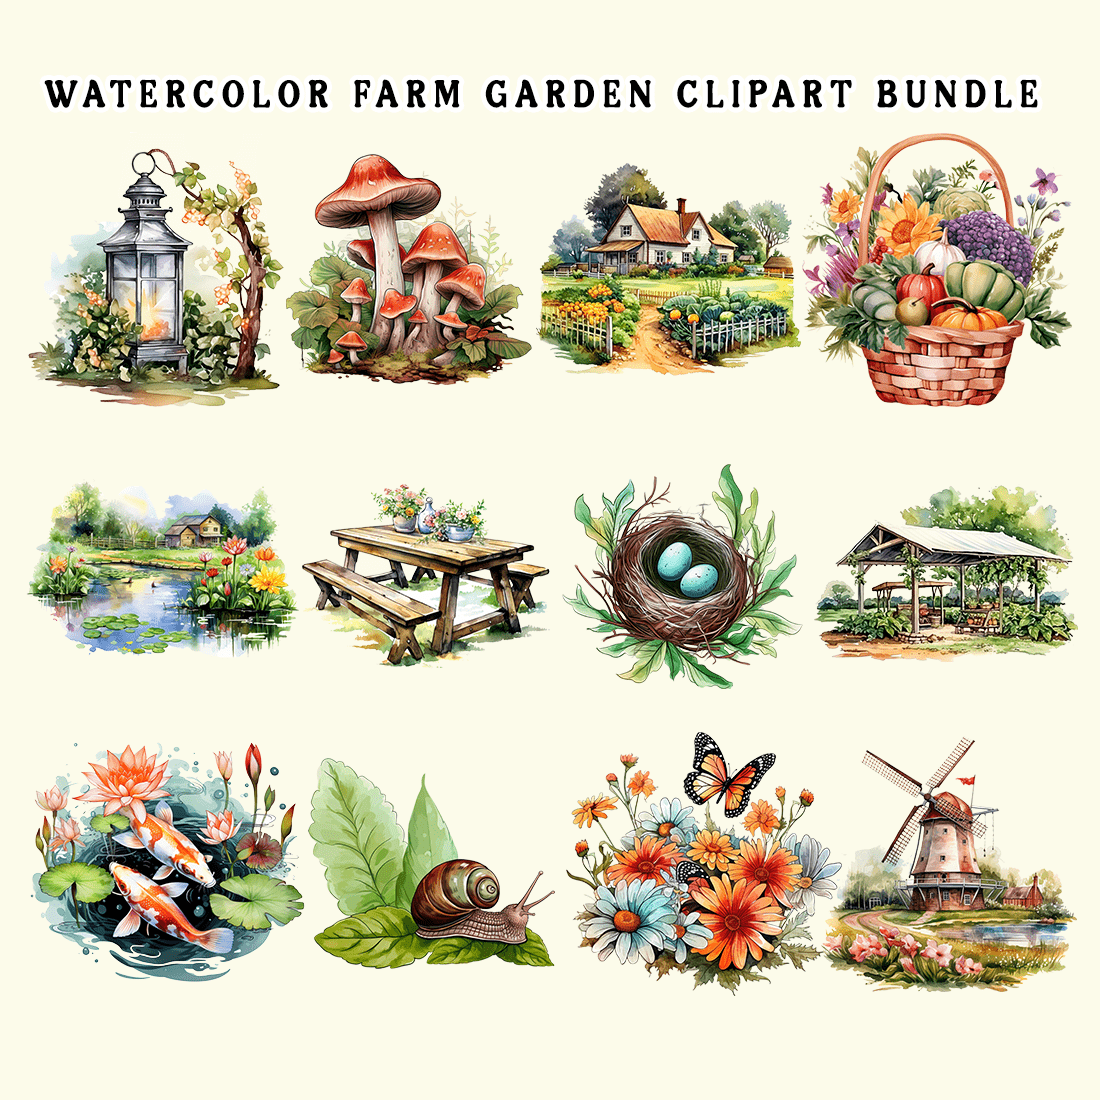 Watercolor Farm Garden Clipart Bundle preview image.